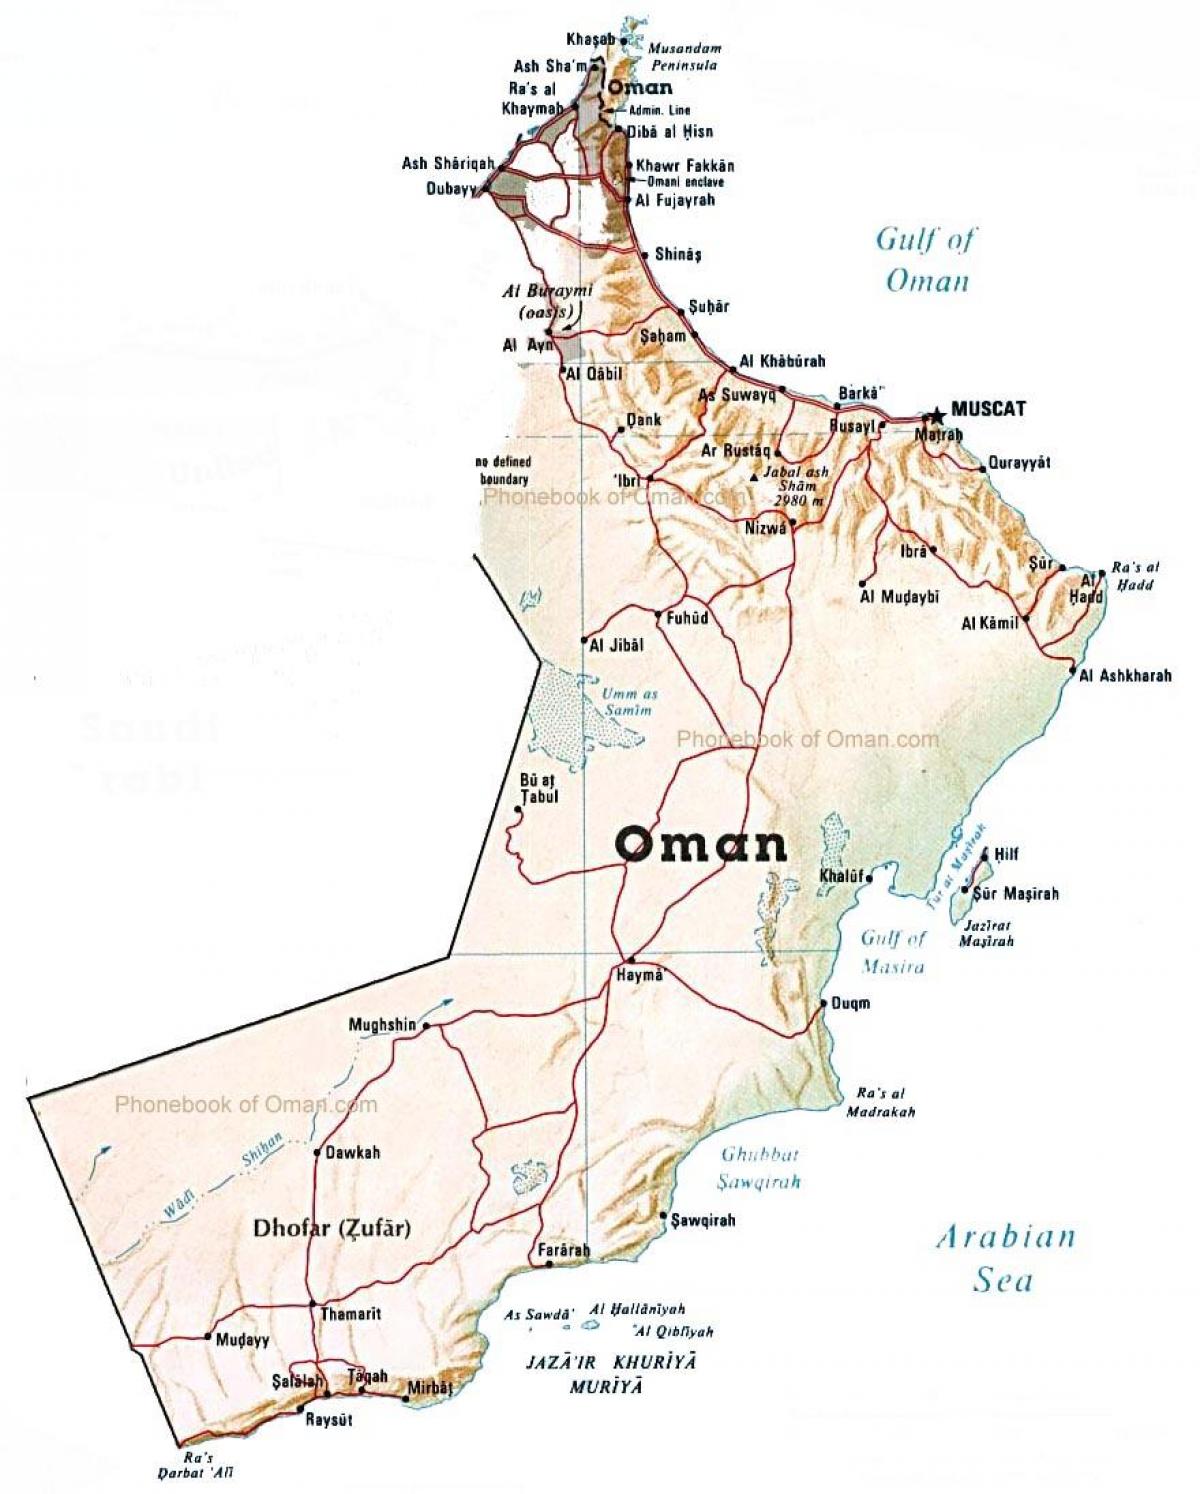 Oman peta negara